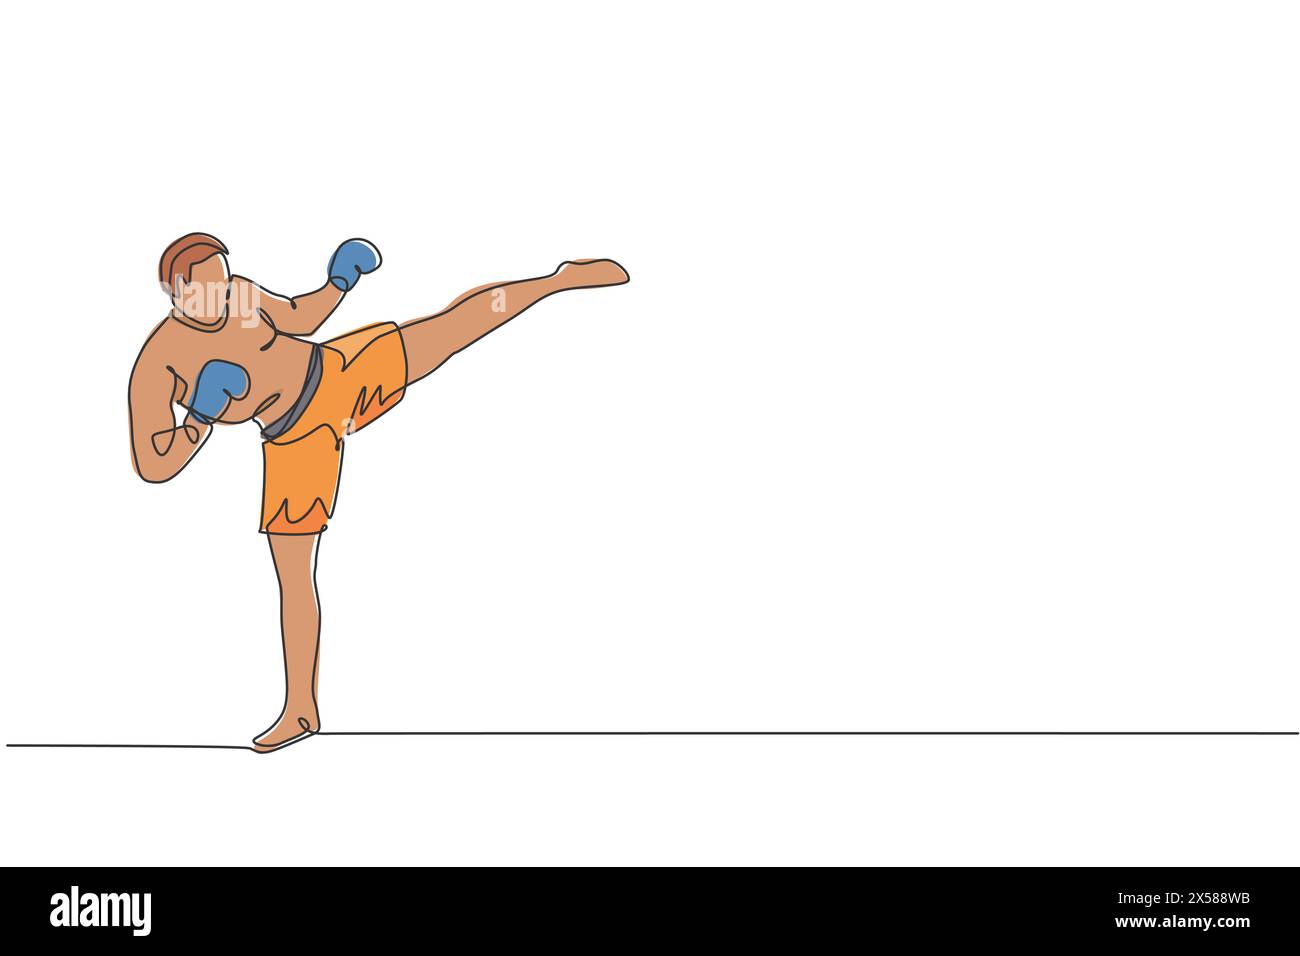 Eine durchgehende Linienzeichnung des jungen Sportmannes Kickboxer-Athleten, der kräftige Kickhaltung im Fitnessstudio trainiert. Kämpferisches Kickboxen-Sportkonzept. Dyn Stock Vektor